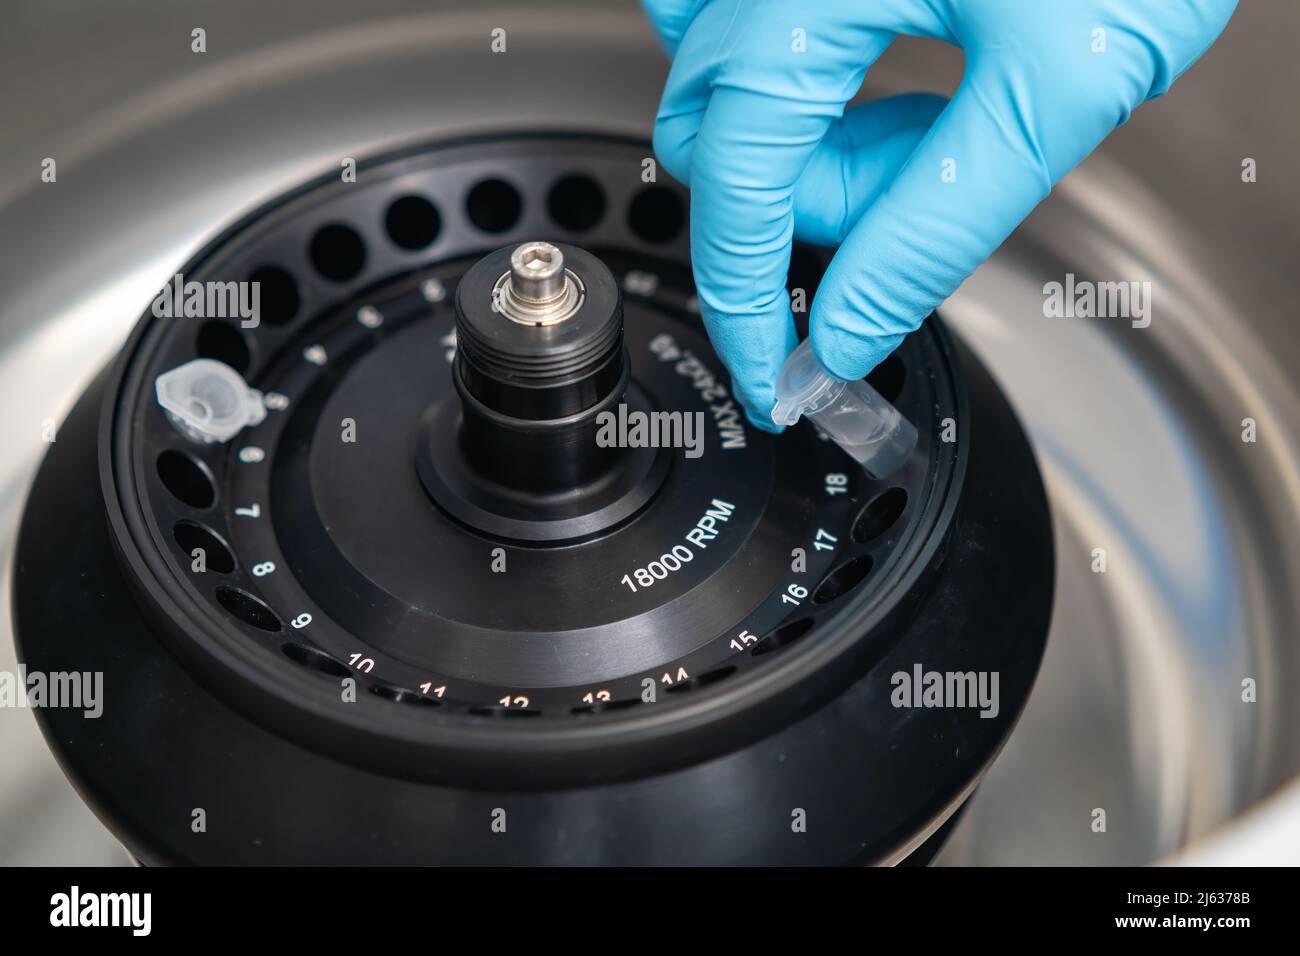 Le scientifique place les microtubes à centrifuger dans la centrifugeuse pour la séparation de phase. Analyse de sang ou de sérum en laboratoire clinique Banque D'Images